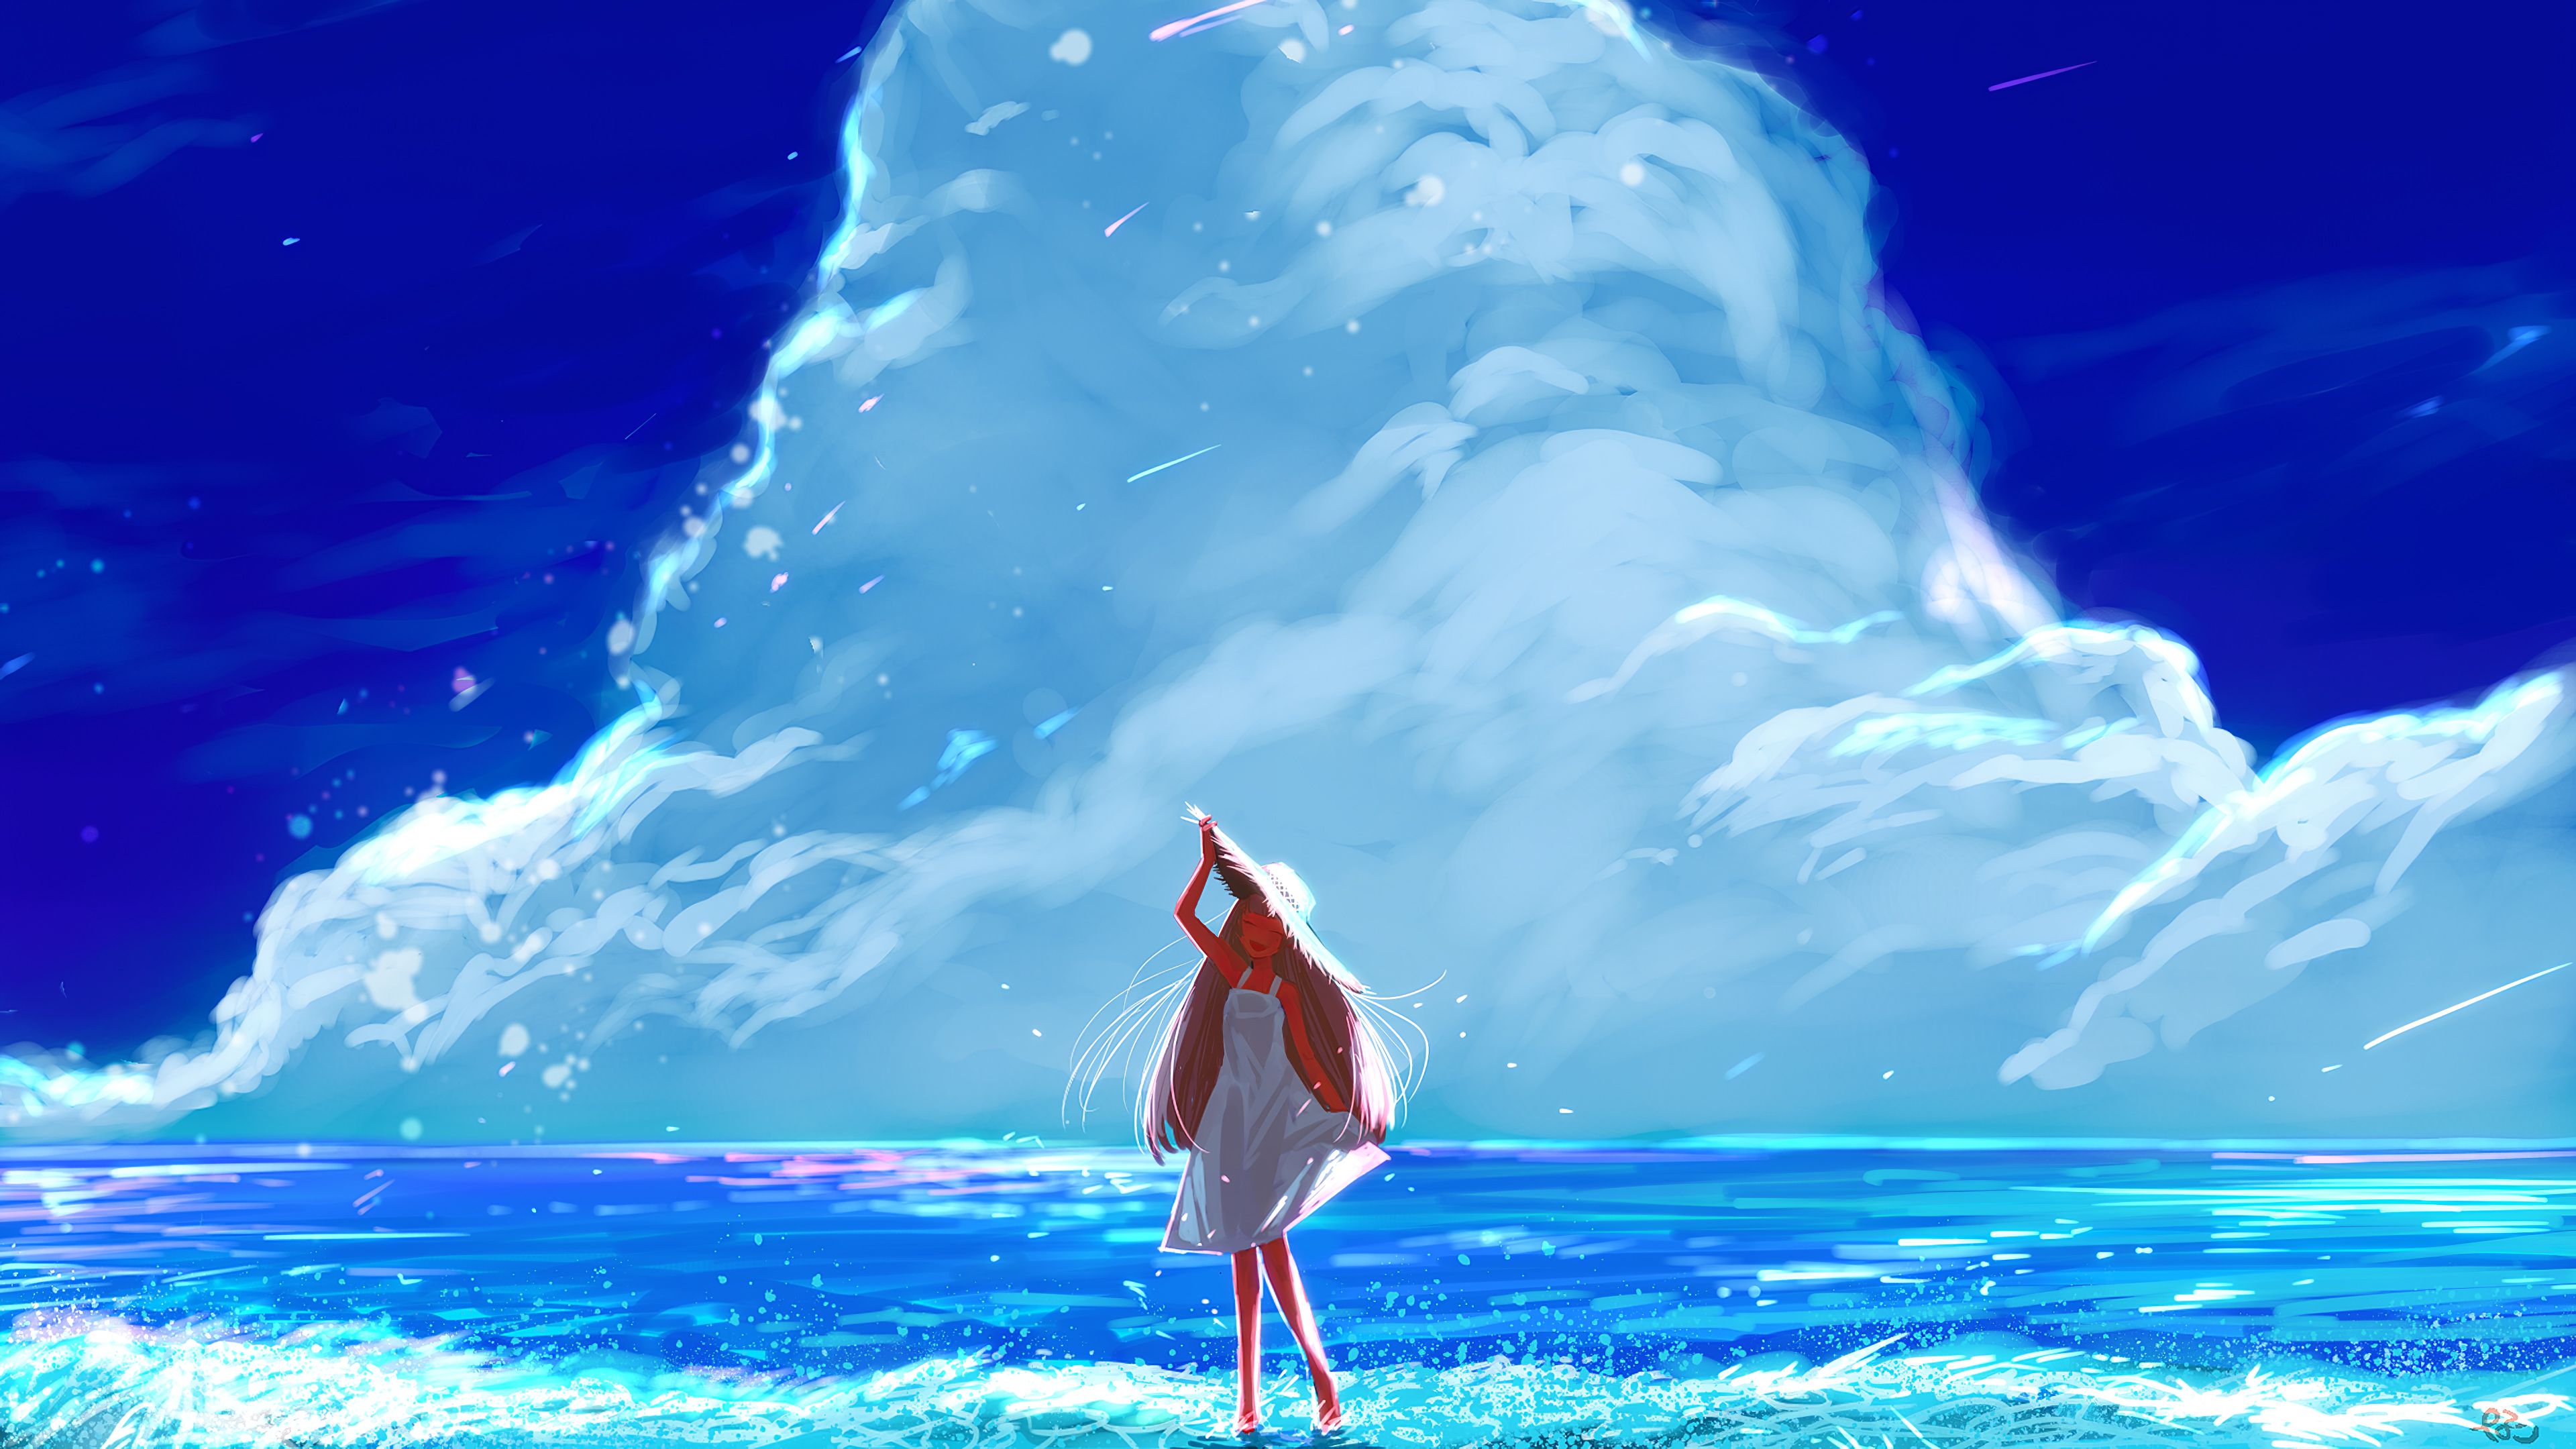 Anime landscape  Ocean  Sky  Wallpaper Engine  YouTube